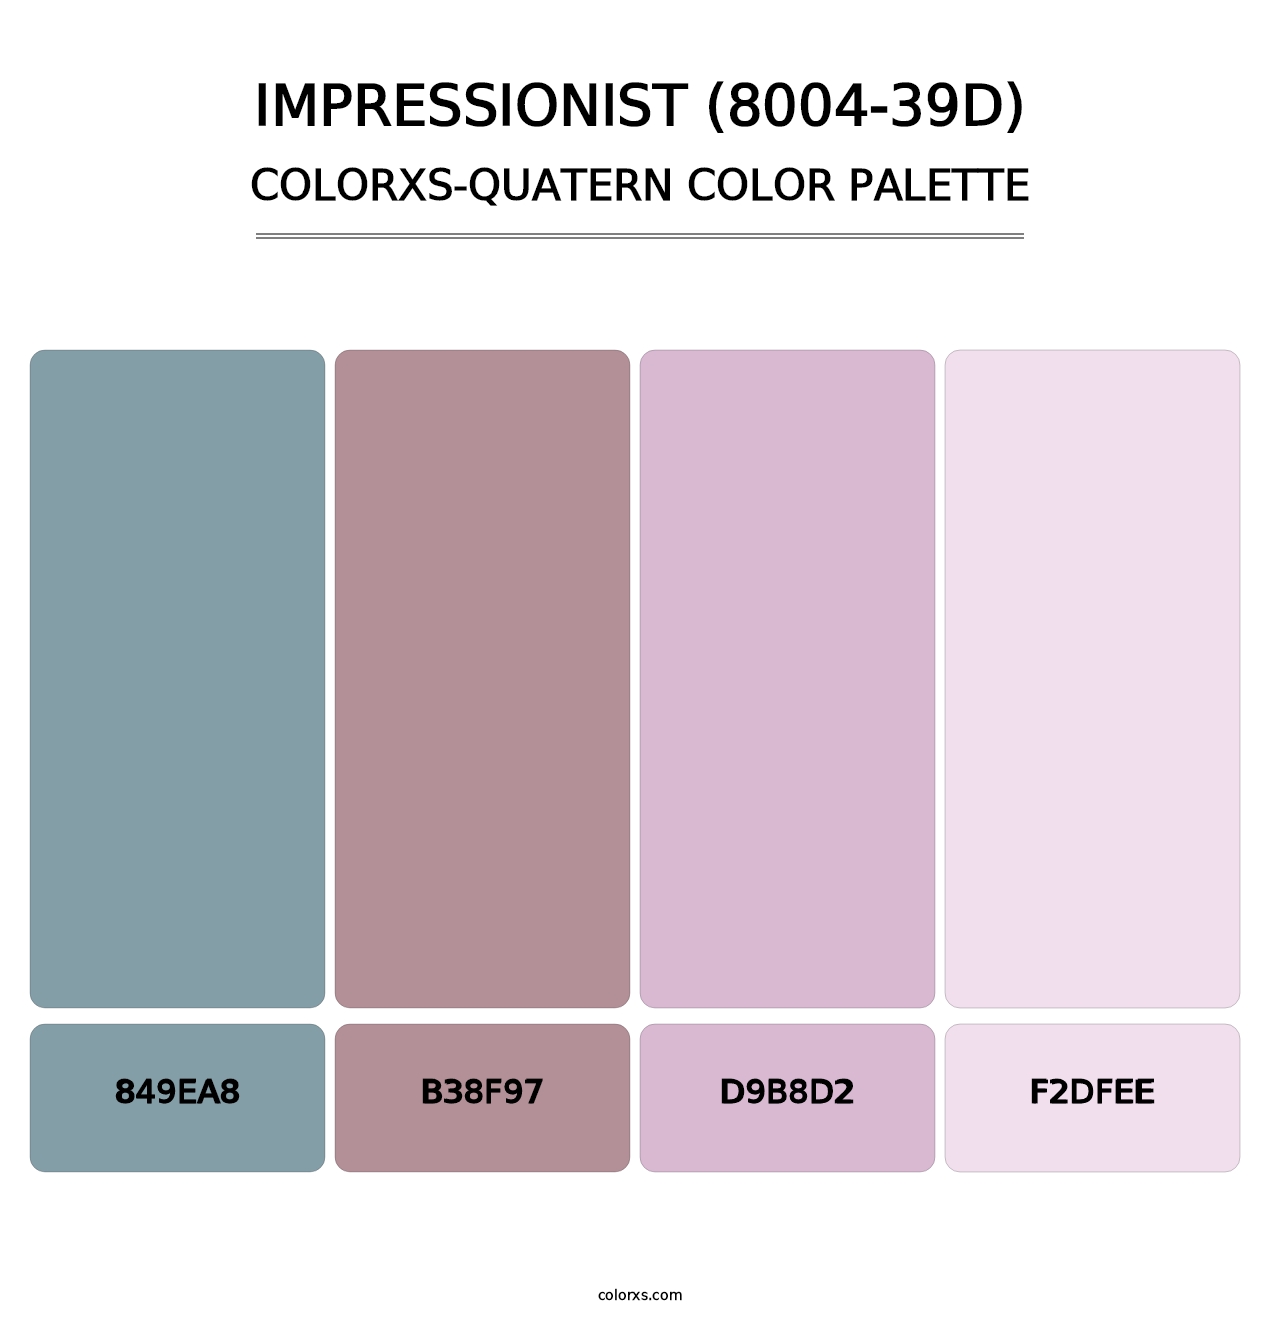 Impressionist (8004-39D) - Colorxs Quatern Palette